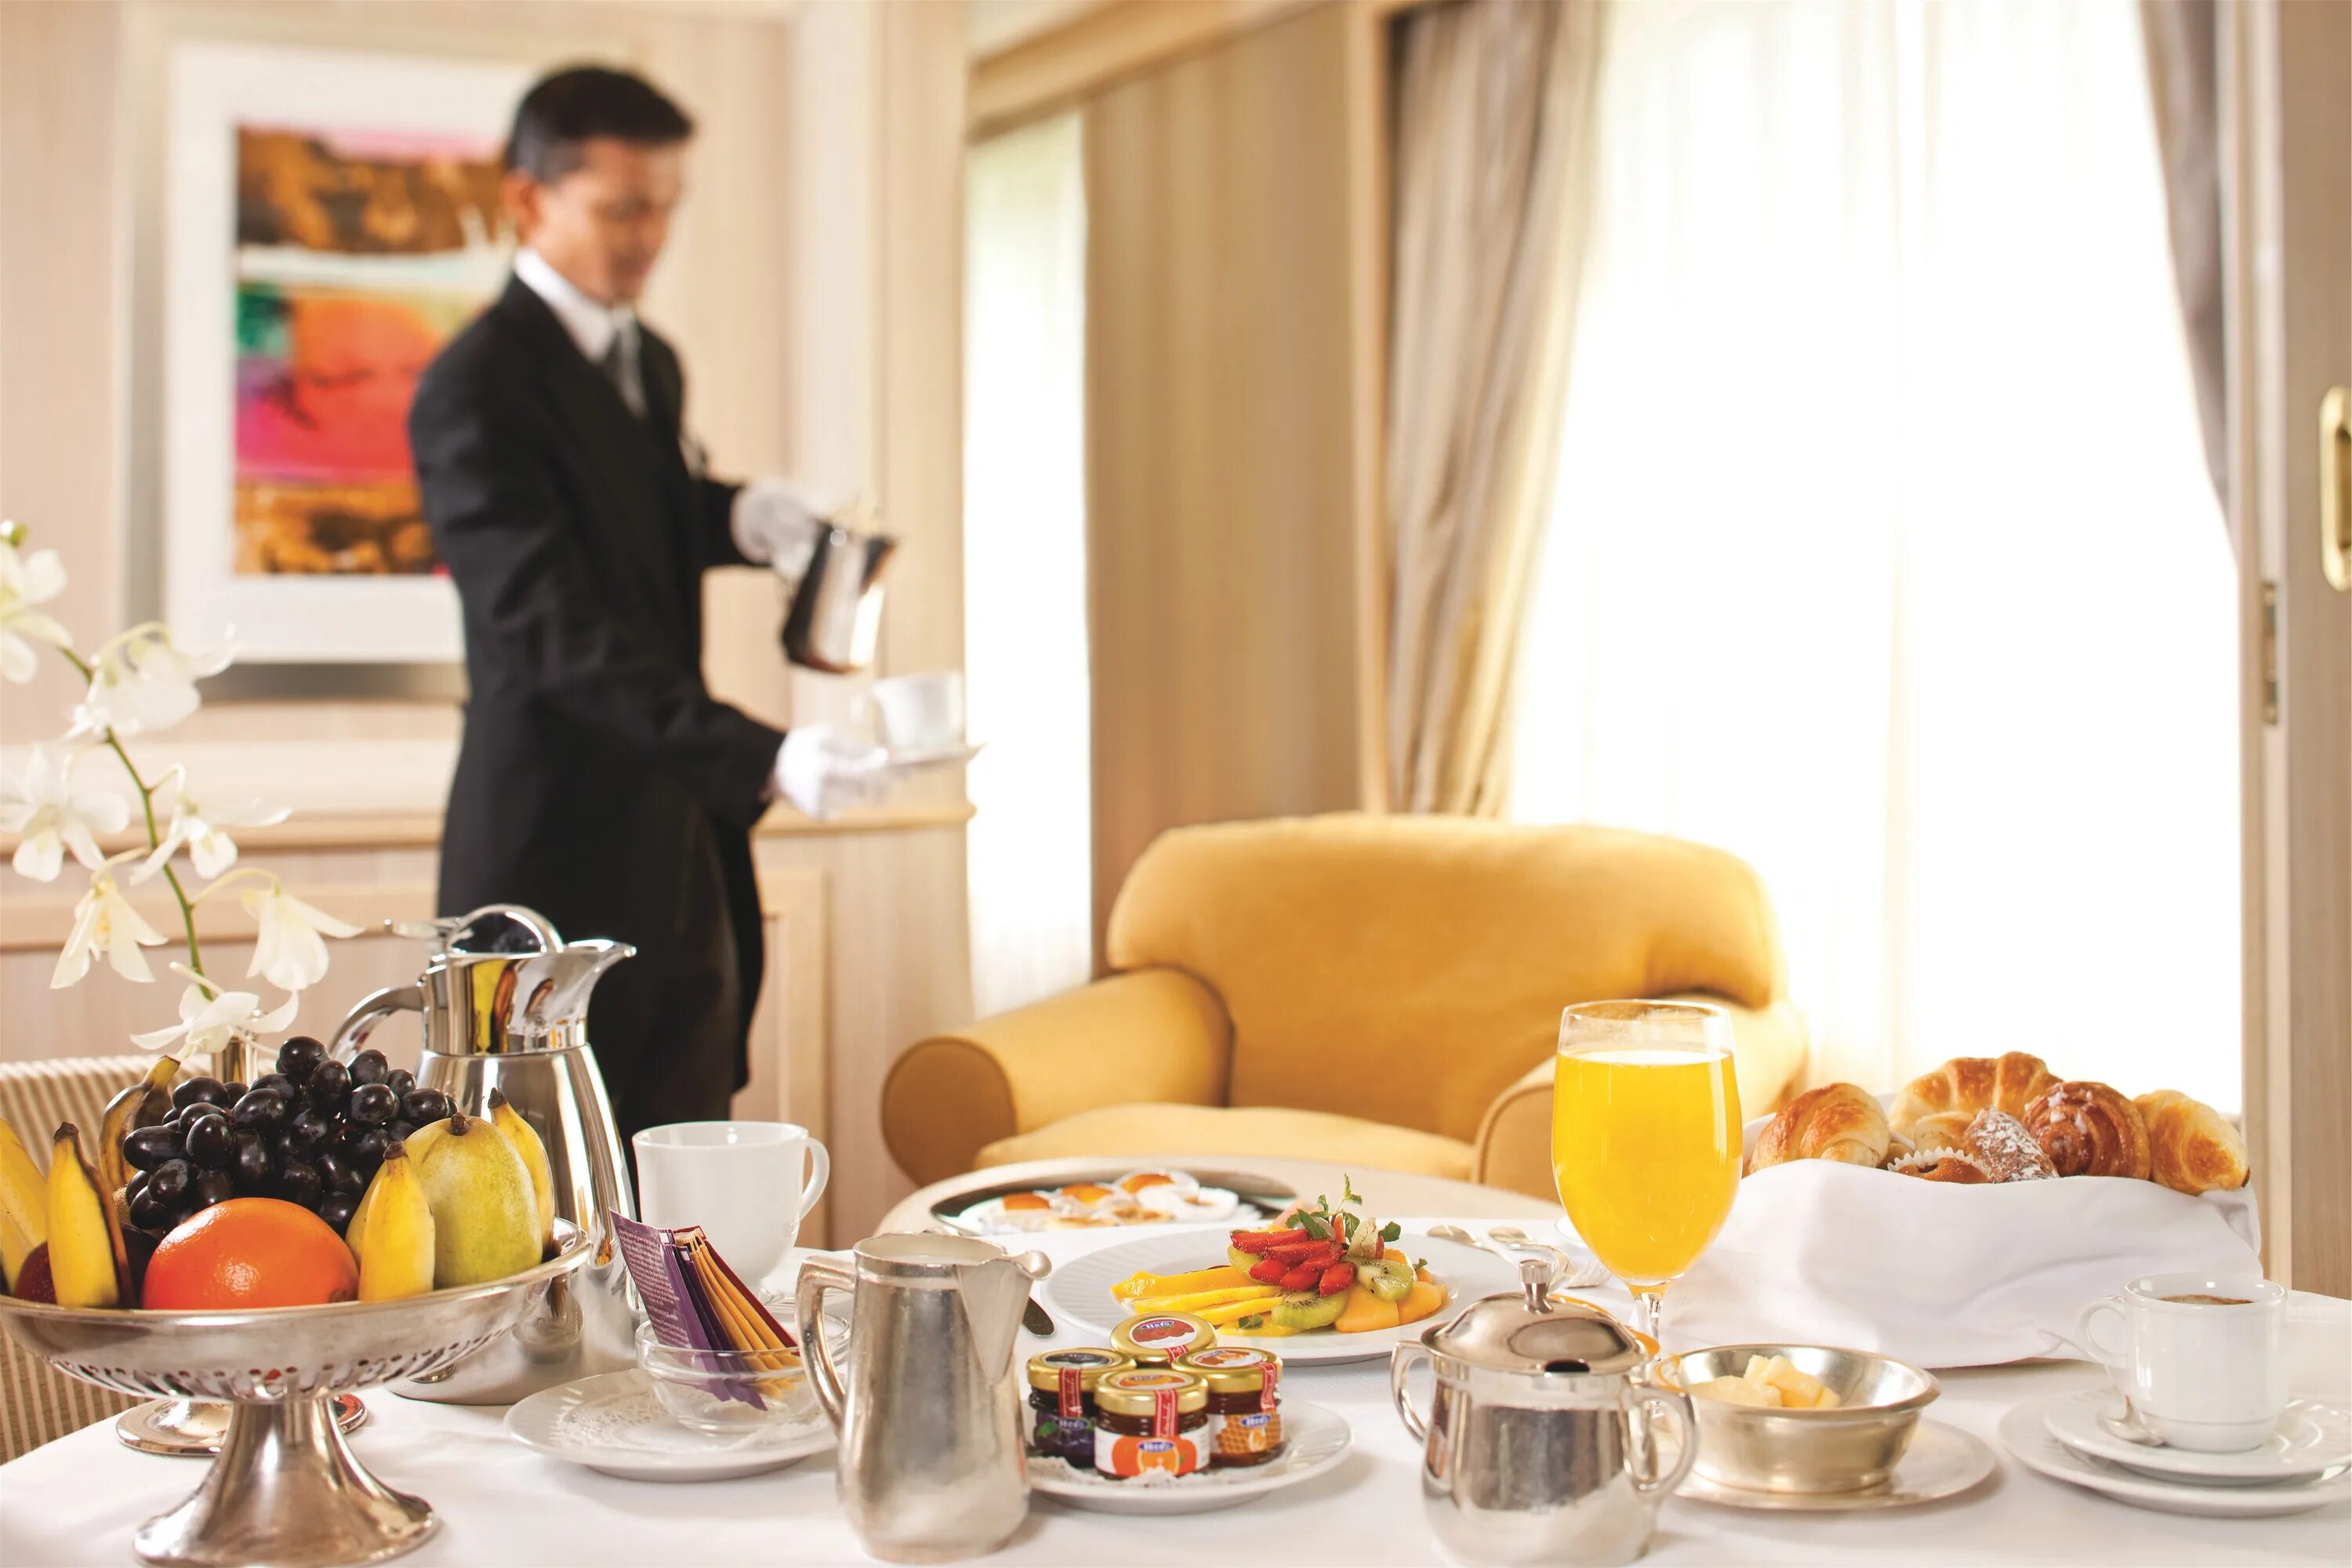 Оказание экскурсионных услуг. Рум сервис в гостинице. Завтрак в отеле рум сервис. Завтрак в гостинице. Завтрак в номере отеля.